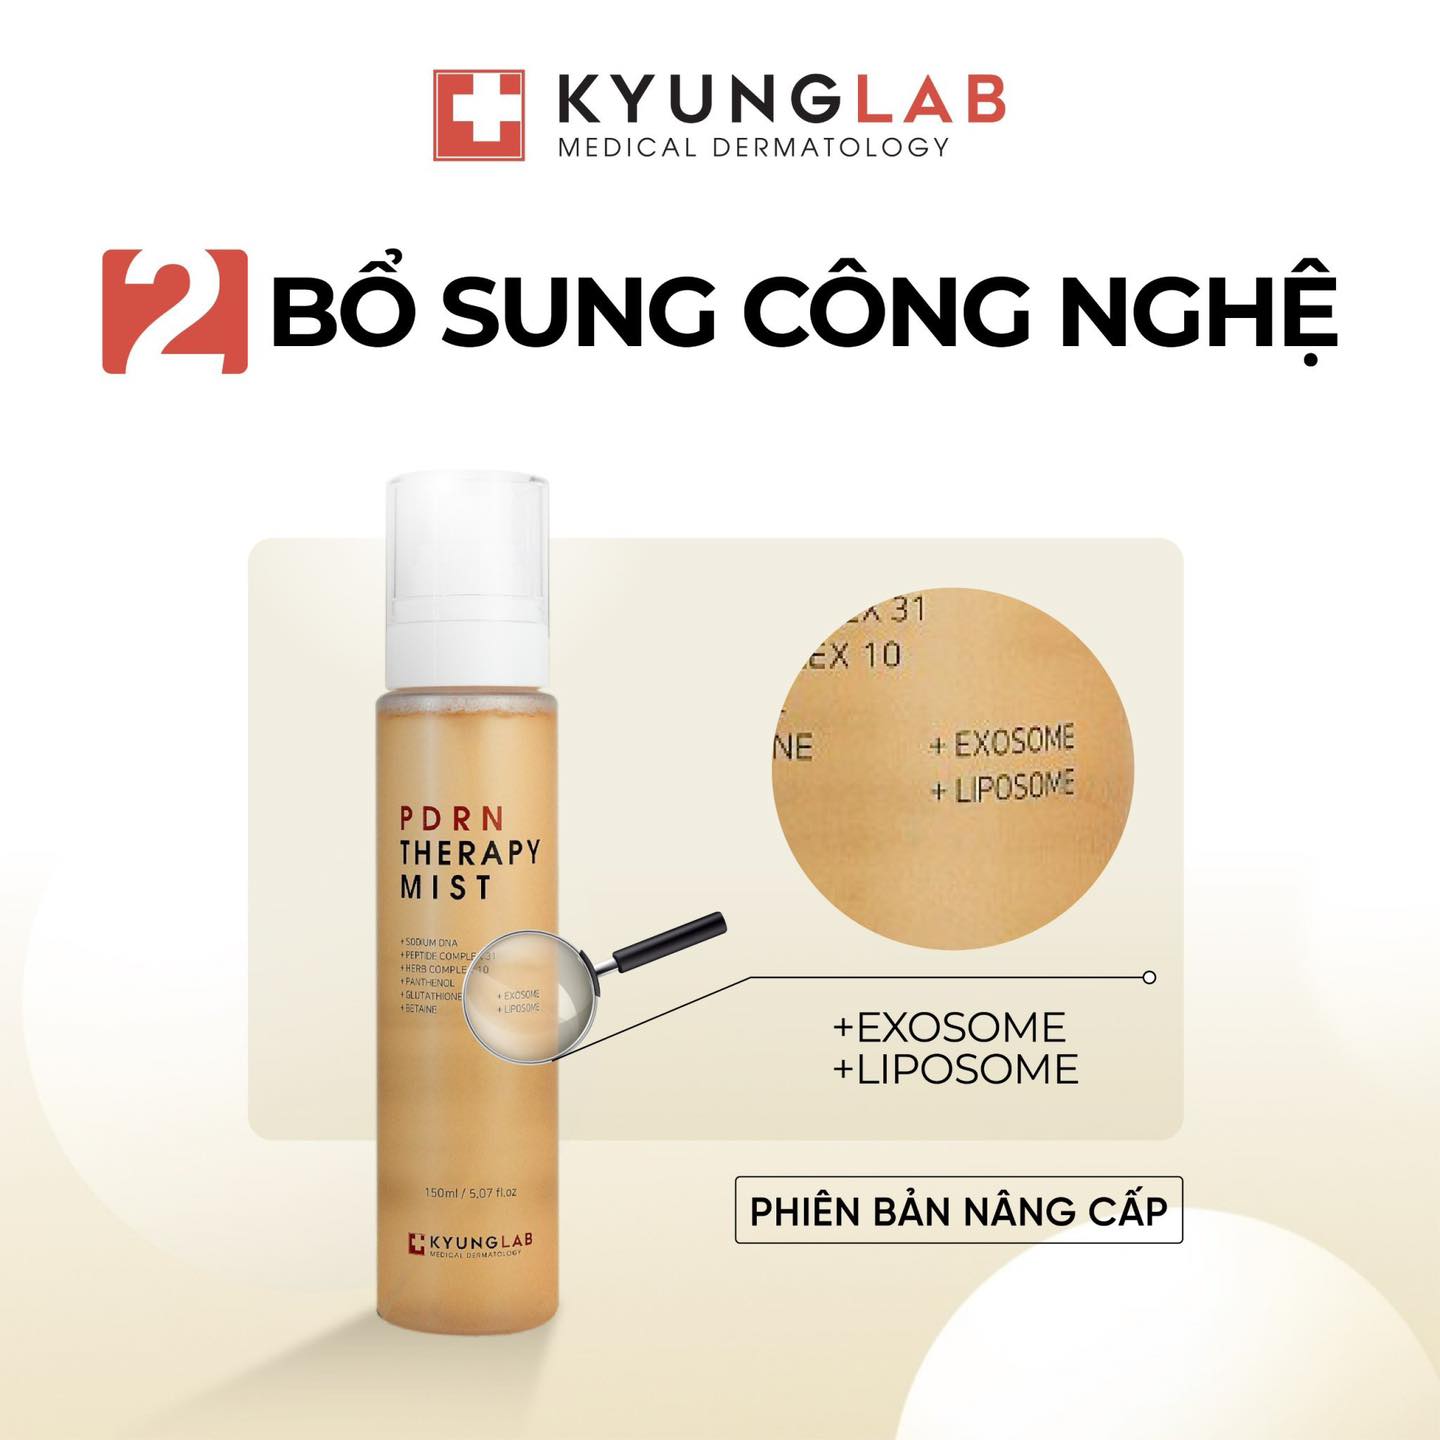 Xịt khoáng dưỡng ẩm Kyung Lab Pdrn Therapy Mist 150ml mẫu mới